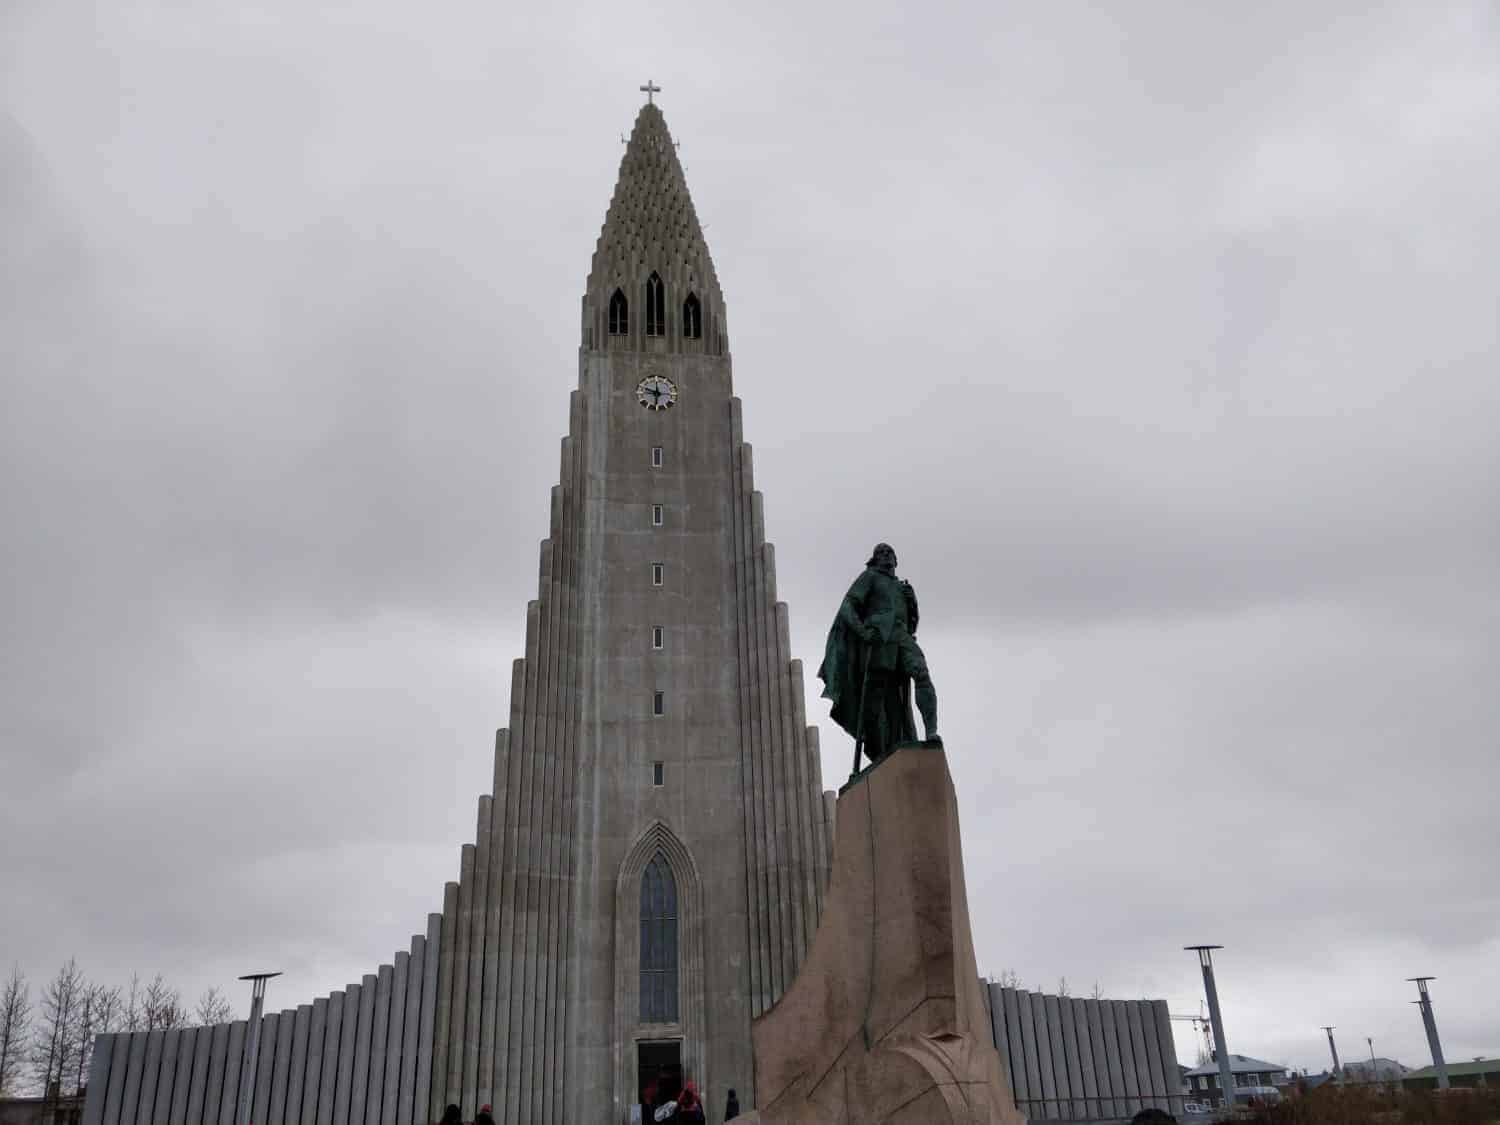 De Hallgrímskirkja met daarvoor het standbeeld van Leif Eriksson.